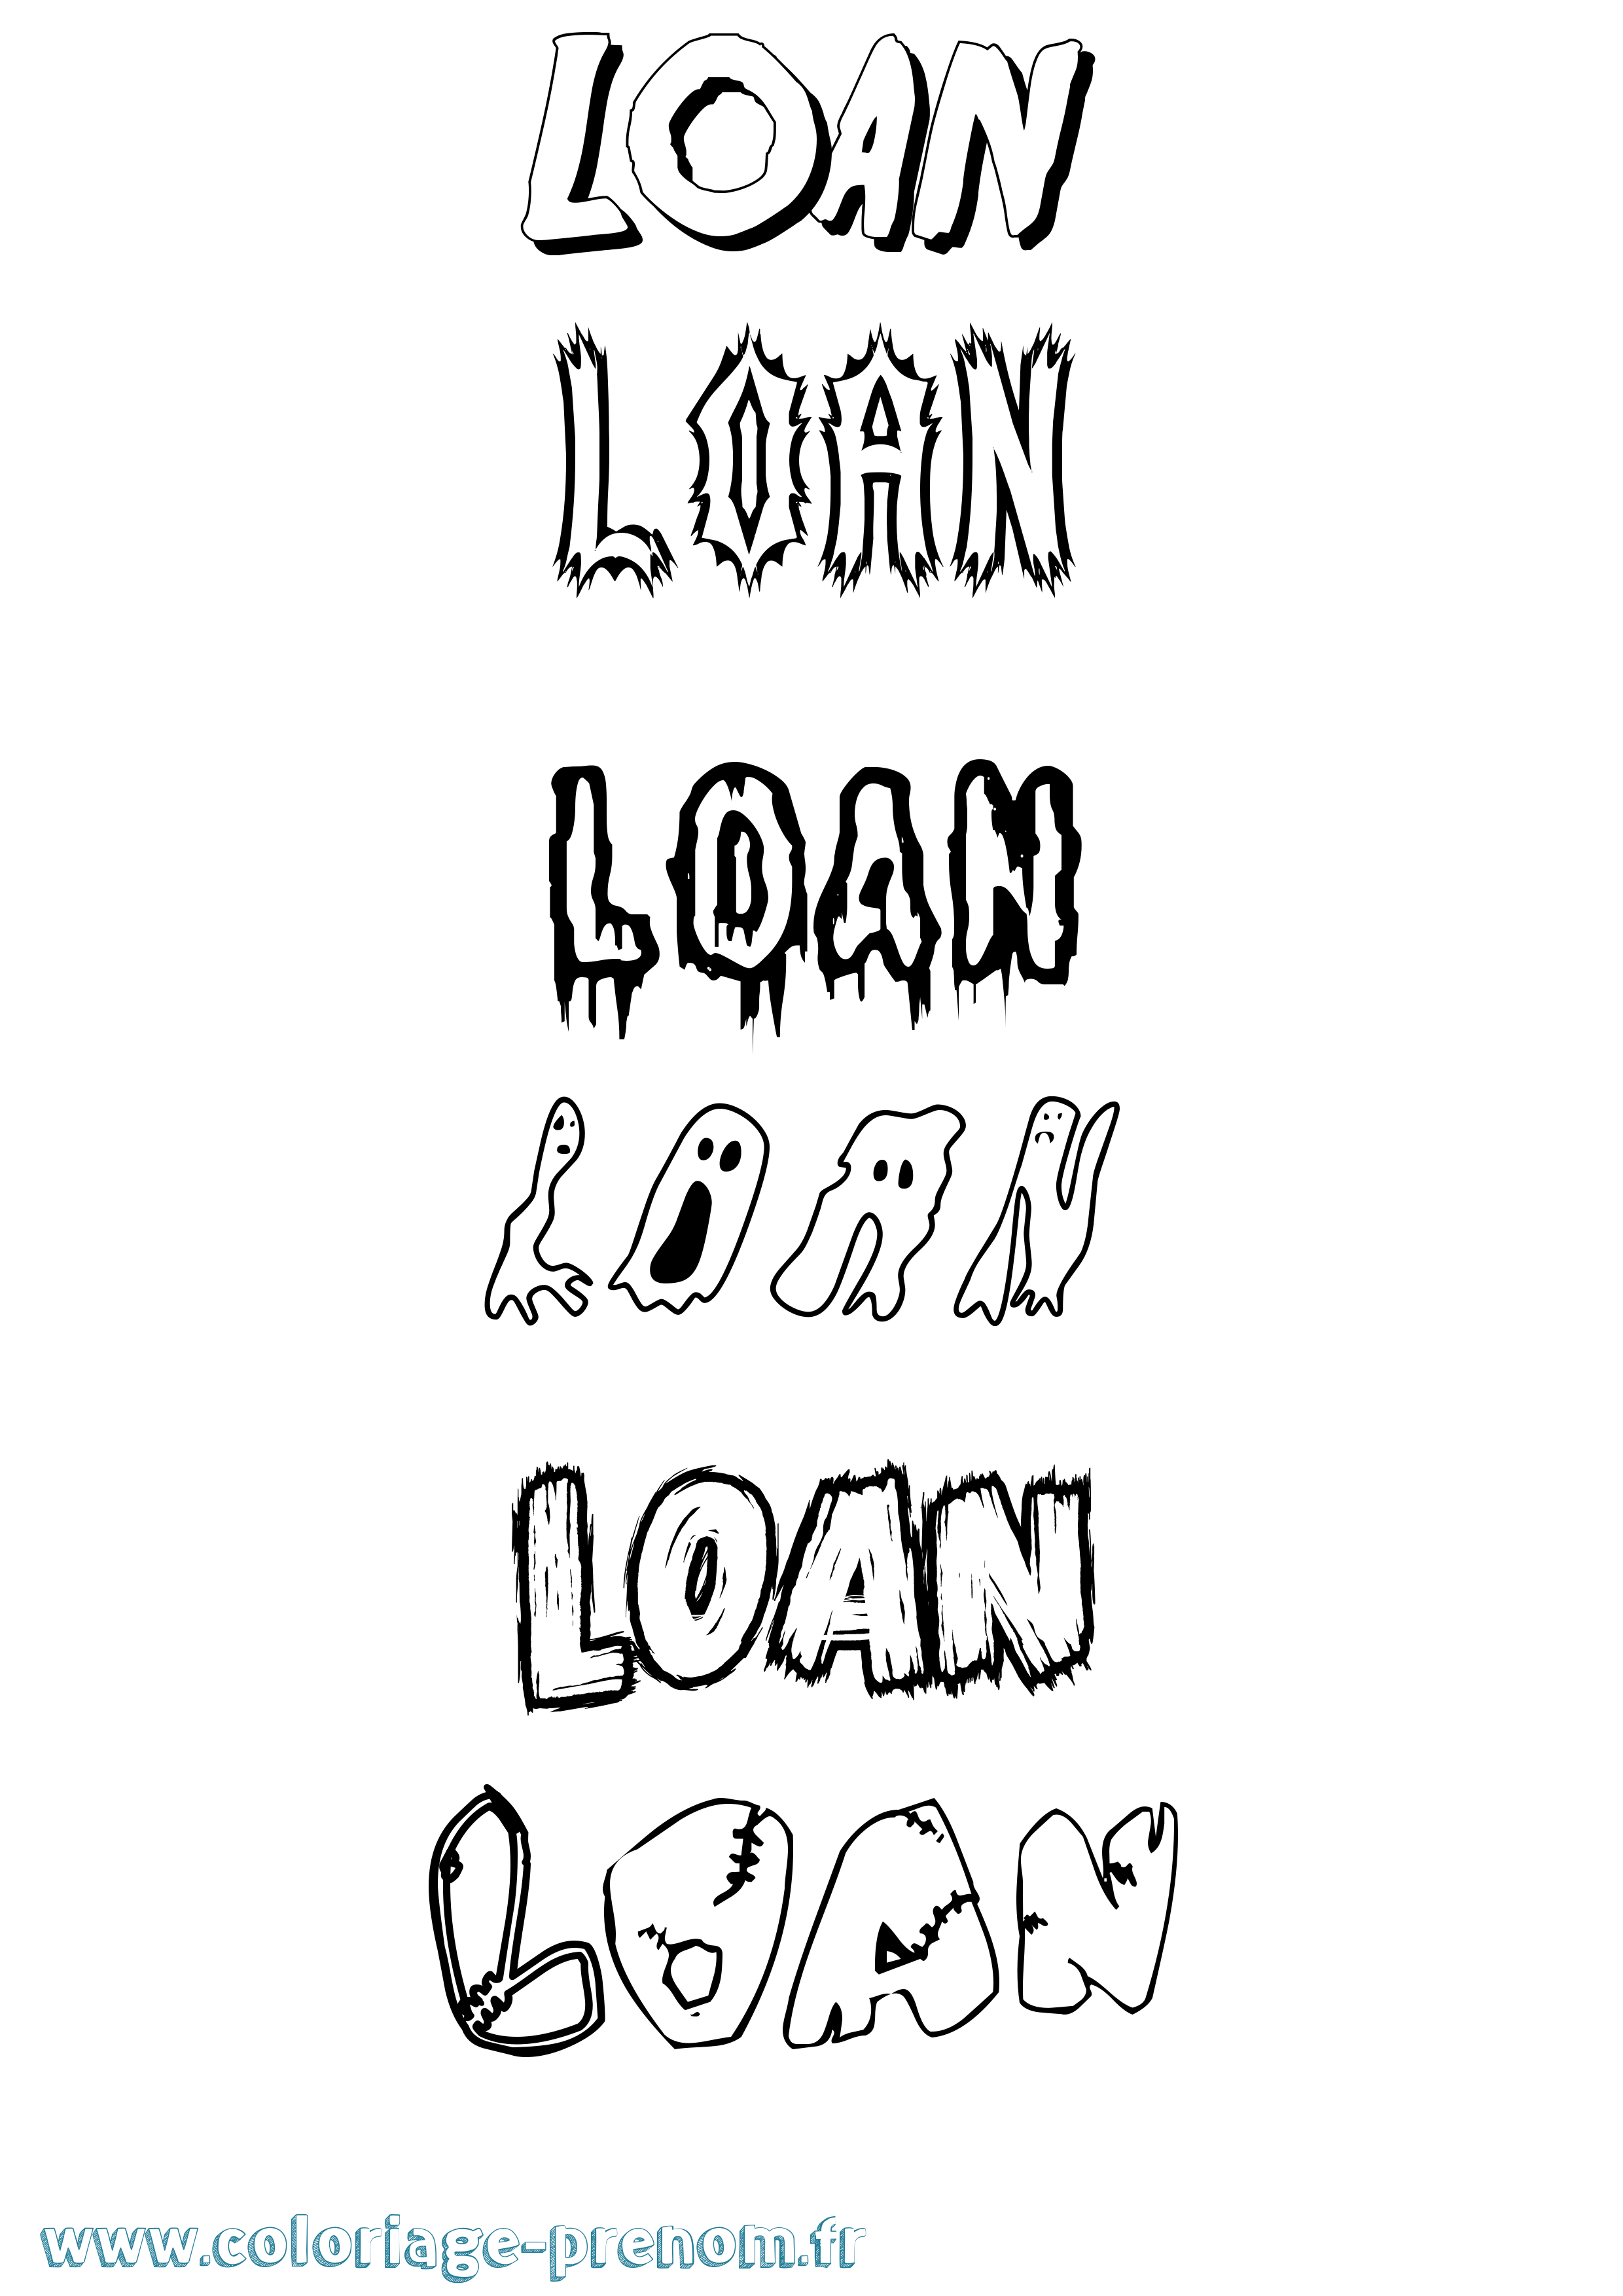 Coloriage prénom Loan